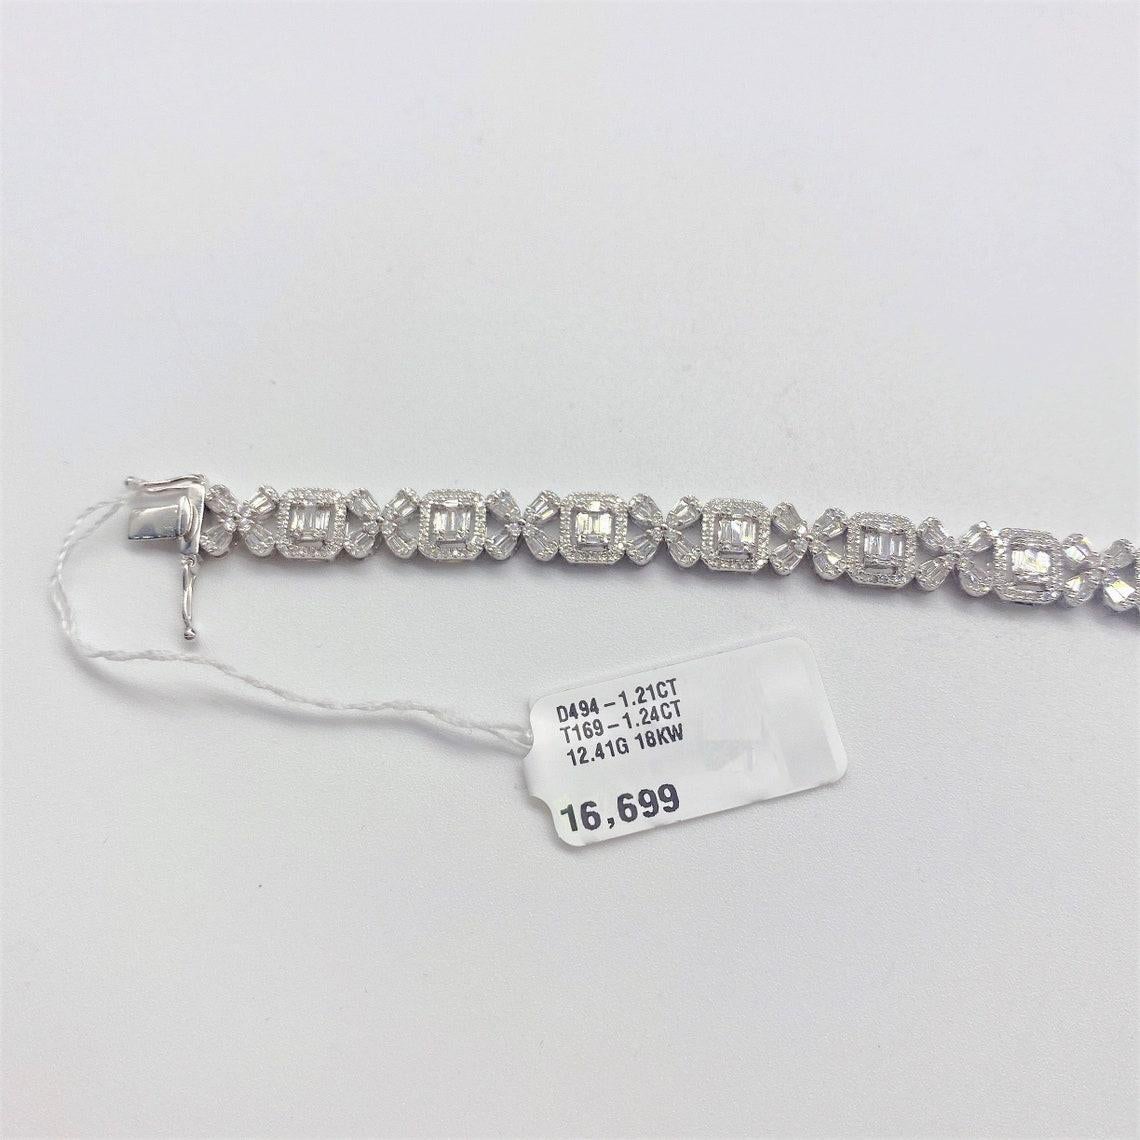 Baguette Cut 16.699 Rare Important 18KT Gorgeous Baguette Floral Diamond Tennis Bracelet For Sale